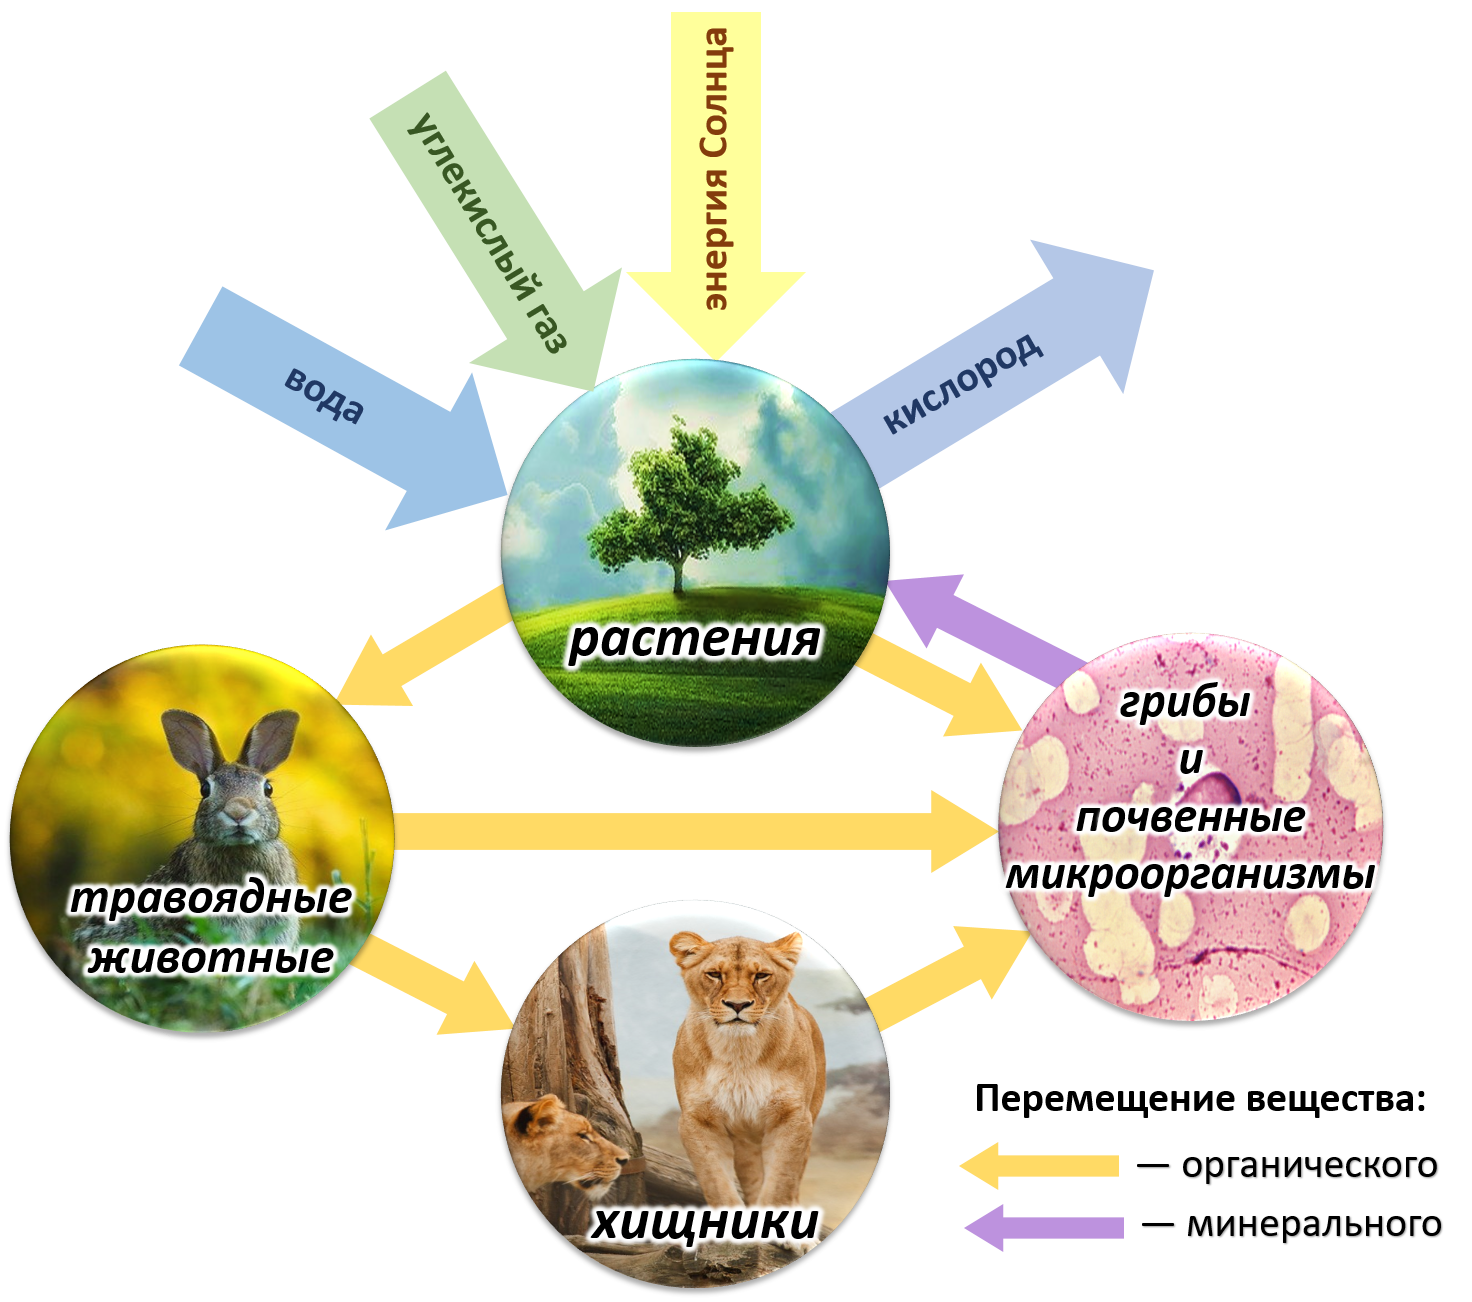 Биологические системы используют. Биотический круговорот веществ в биосфере. Круговорот веществ и энергии в биосфере схема. Круговорот веществ в природе Биосфера. Схема биологического круговорота в природе.